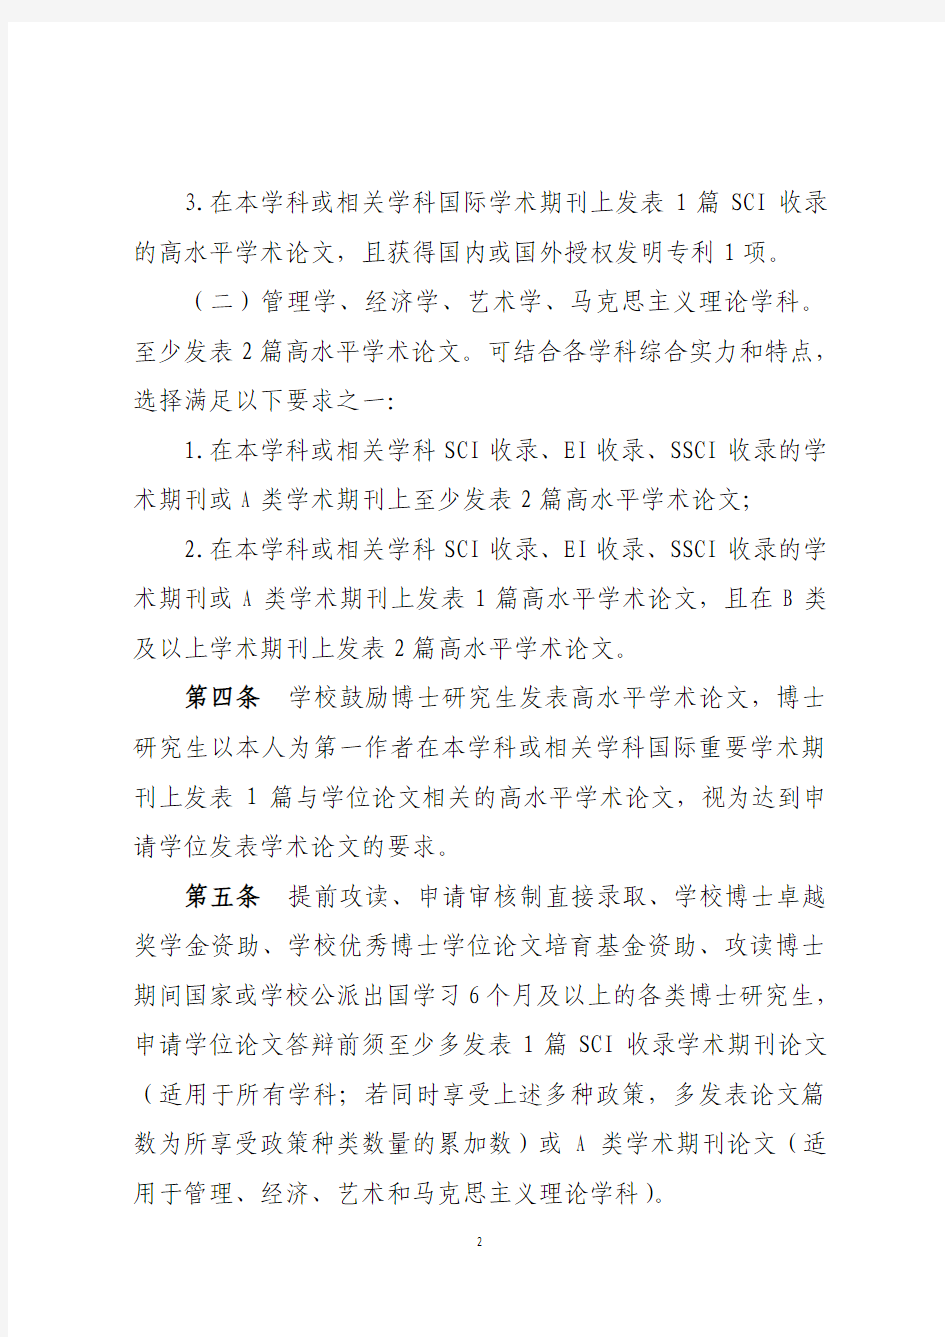 武汉理工大学研究生申请学位发表学术论文的规定 2014 0701